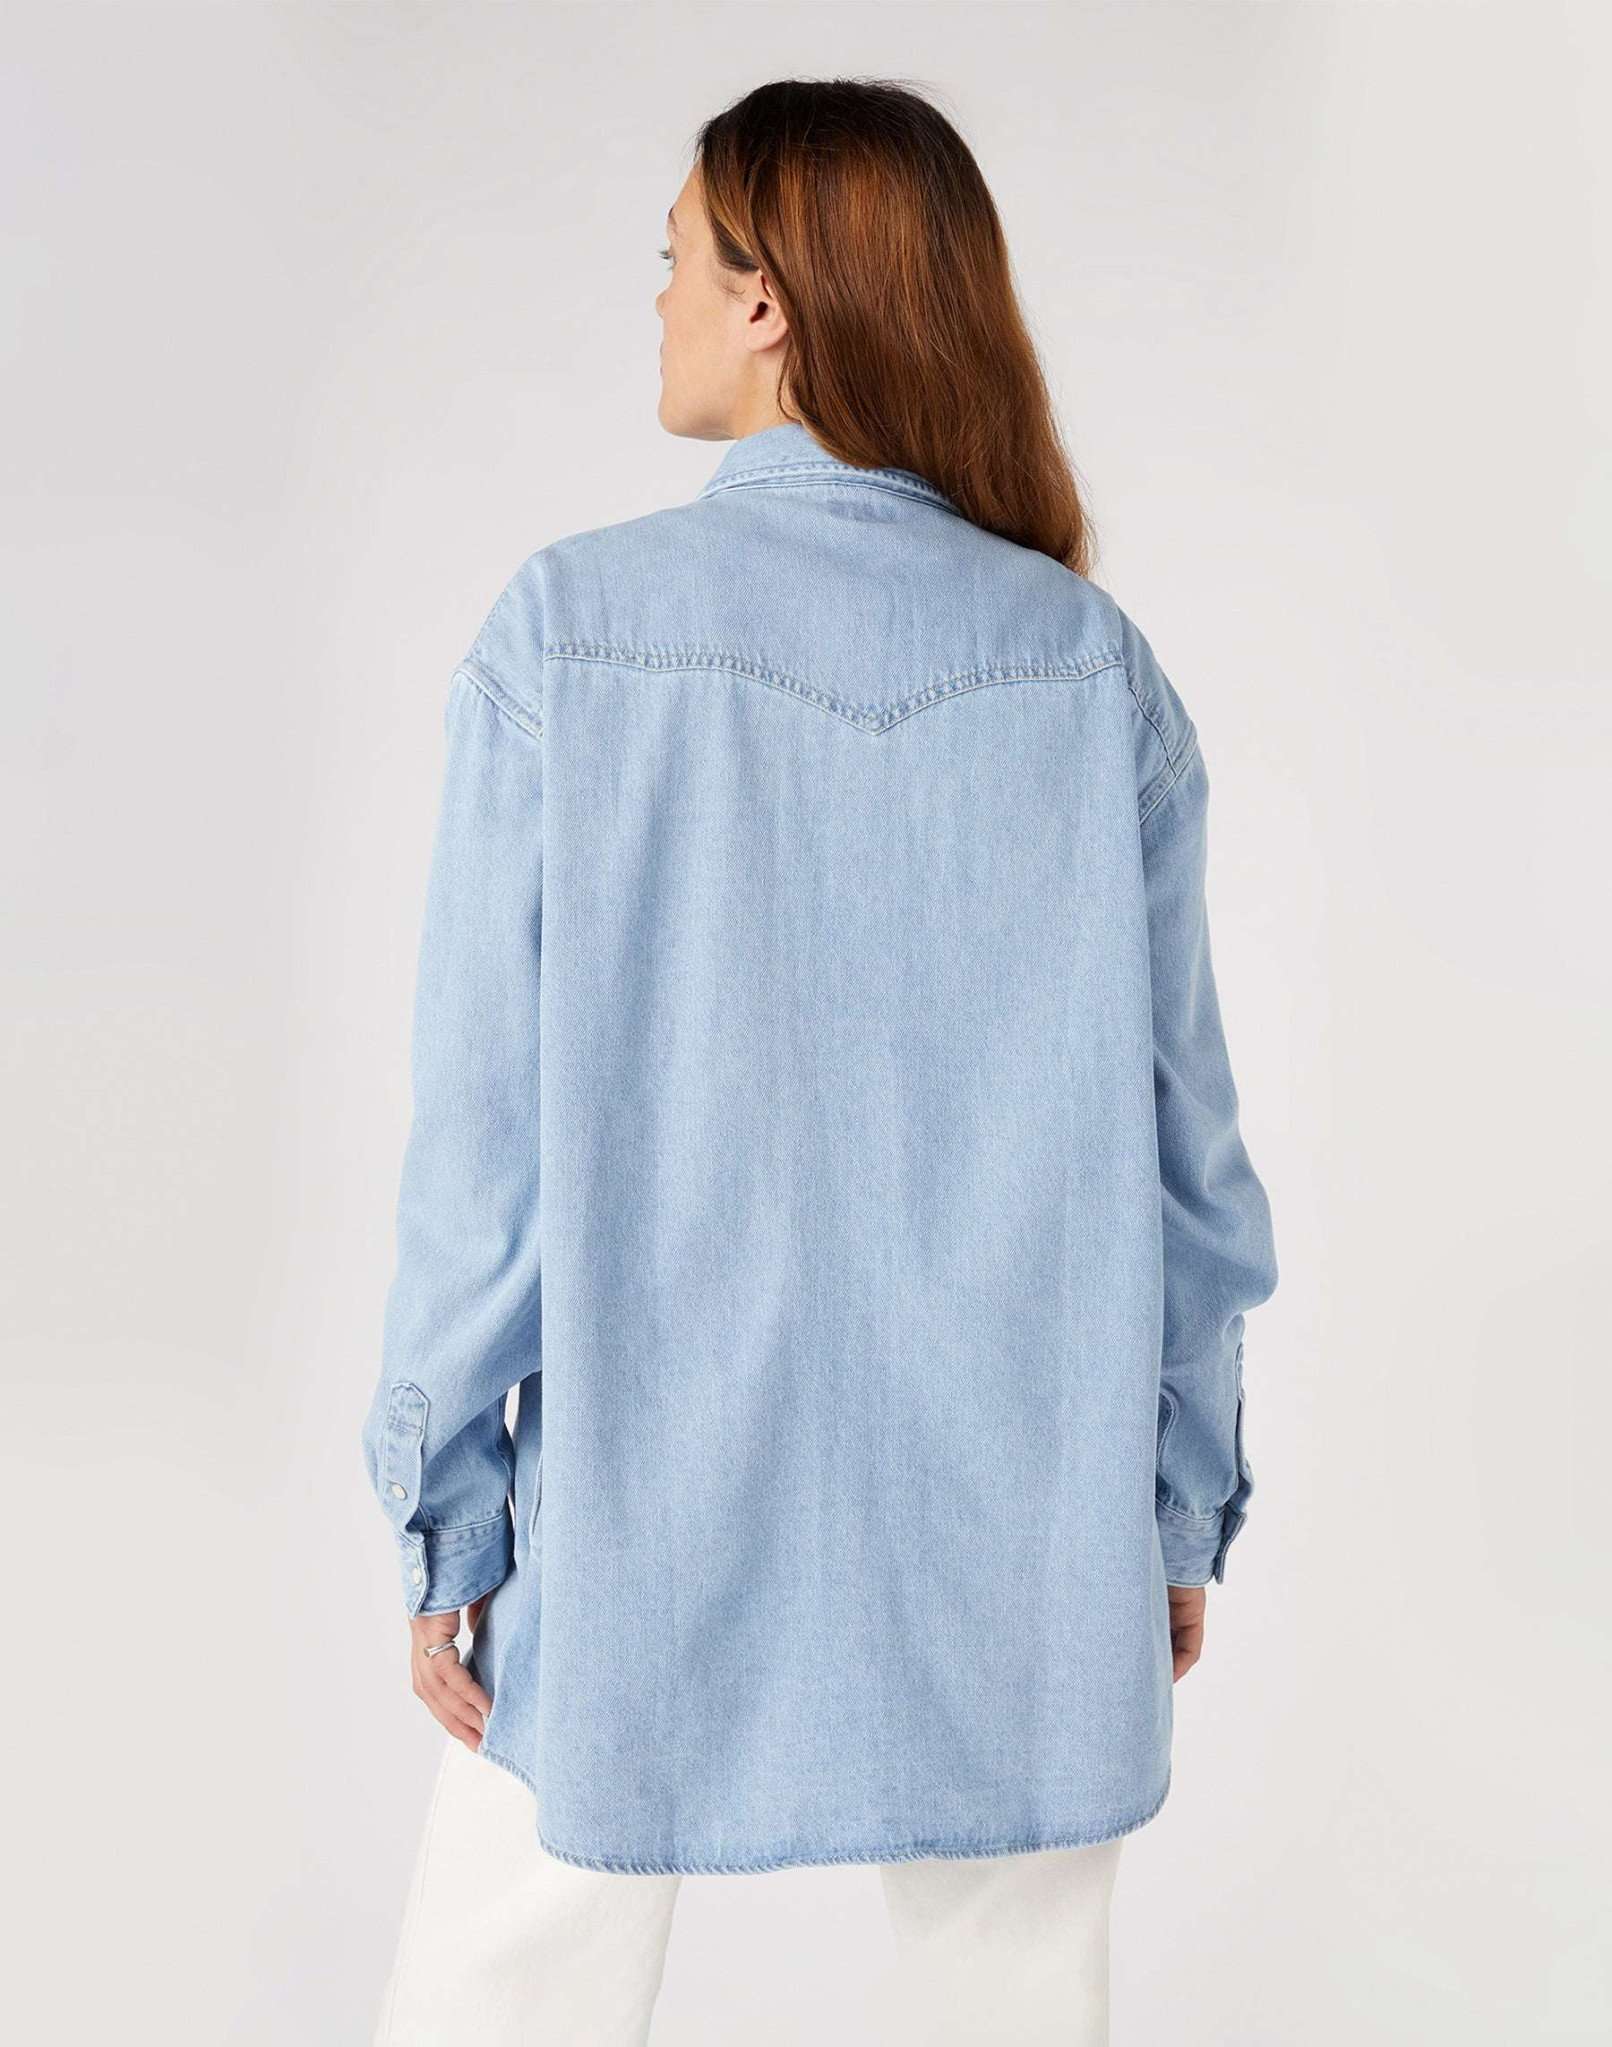 Jumbo Shirt in Light Vintage Indigo Hemden Wrangler   